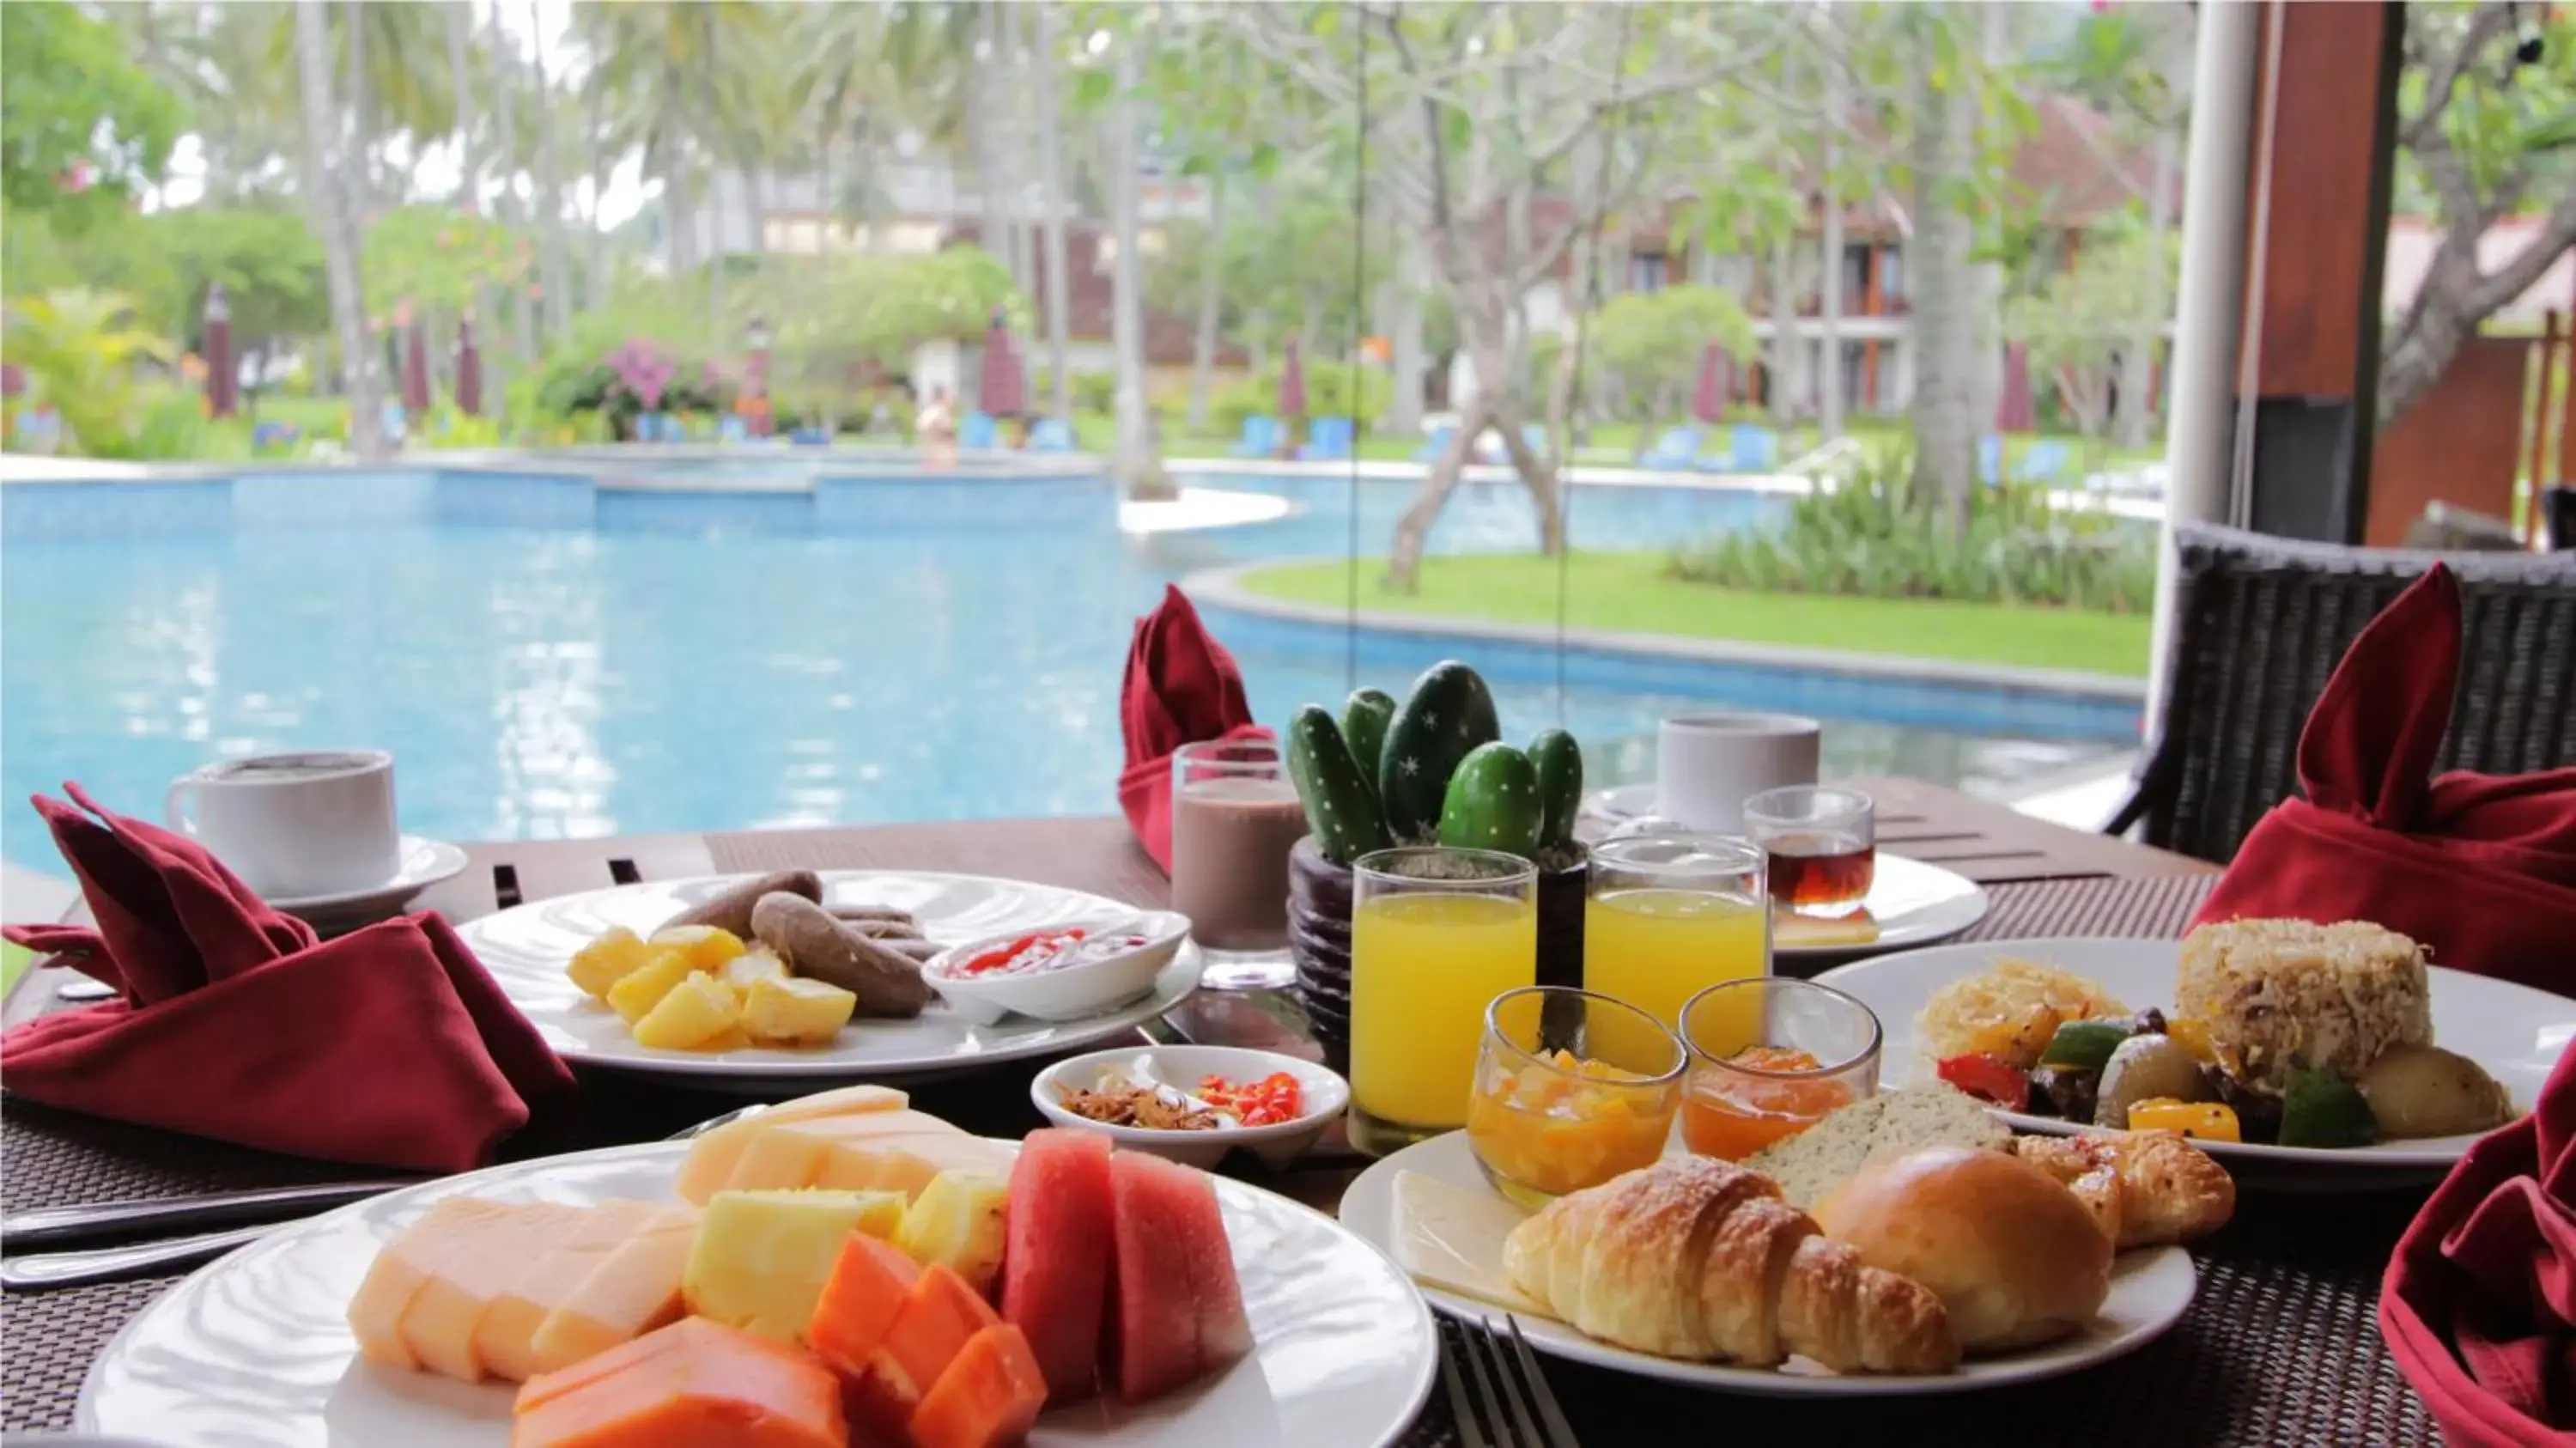 Buffet breakfast, Breakfast in Holiday Resort Lombok